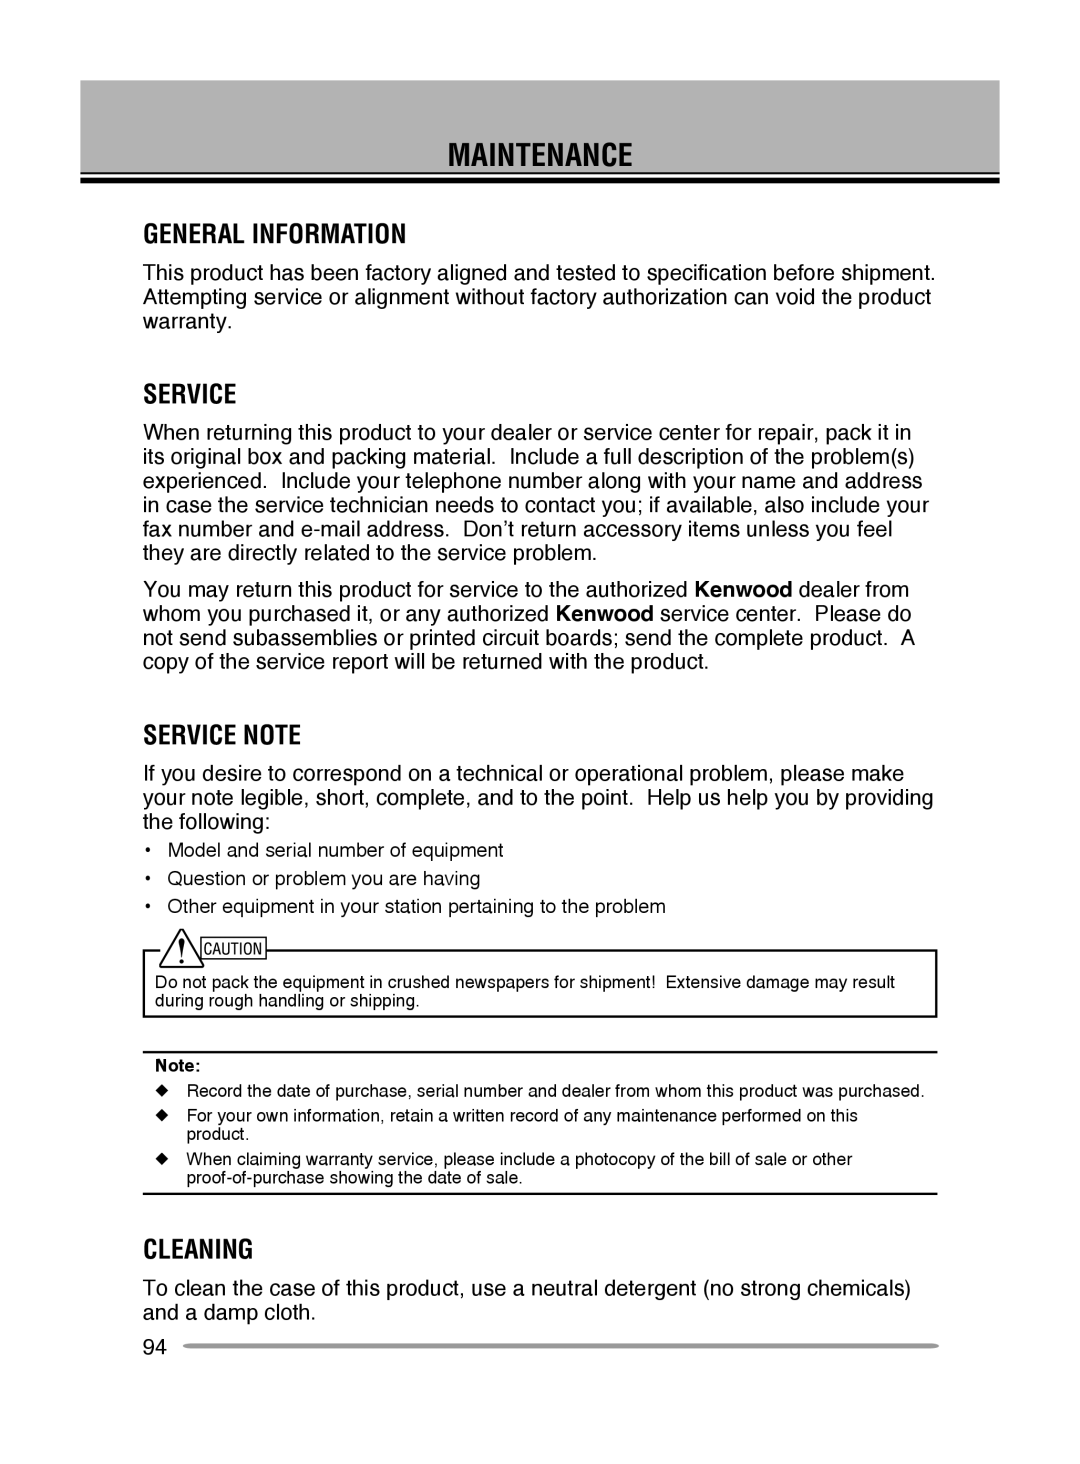 Kenwood TM-V71E, TM-V71A instruction manual Maintenance, General Information, Service Note, Cleaning 